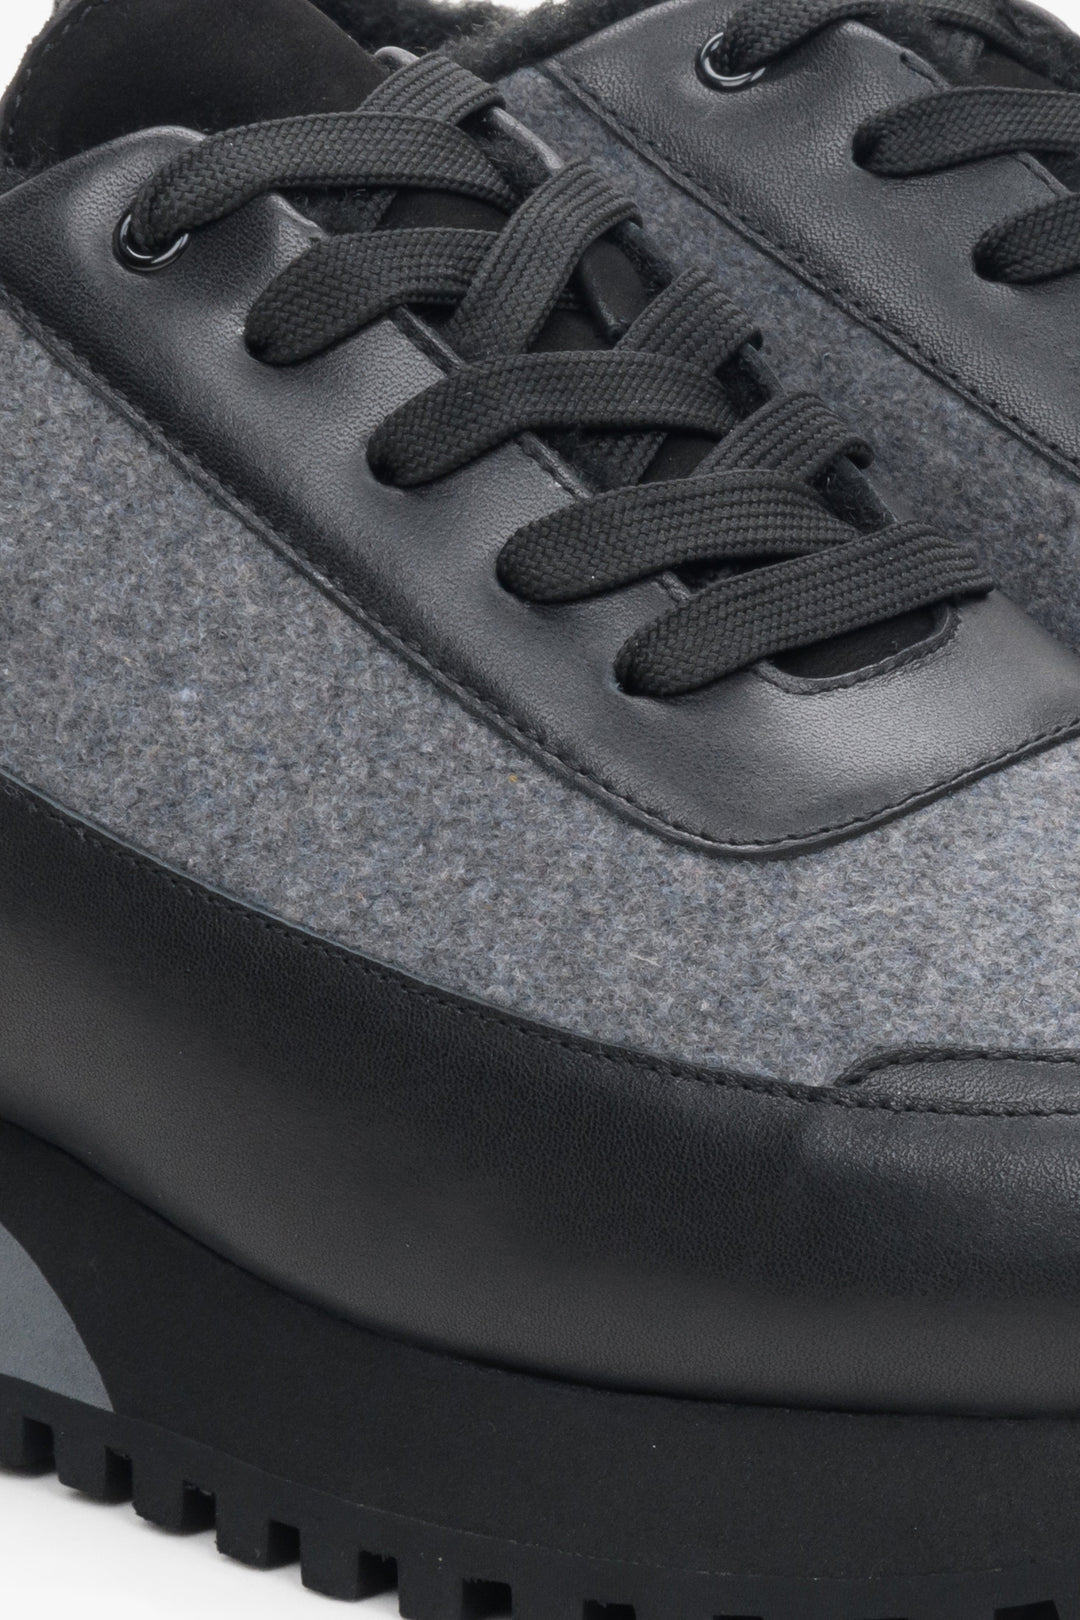 Skórzane sneakersy damskie w kolorze czarno-szare marki Estro - zbliżenie na detale.